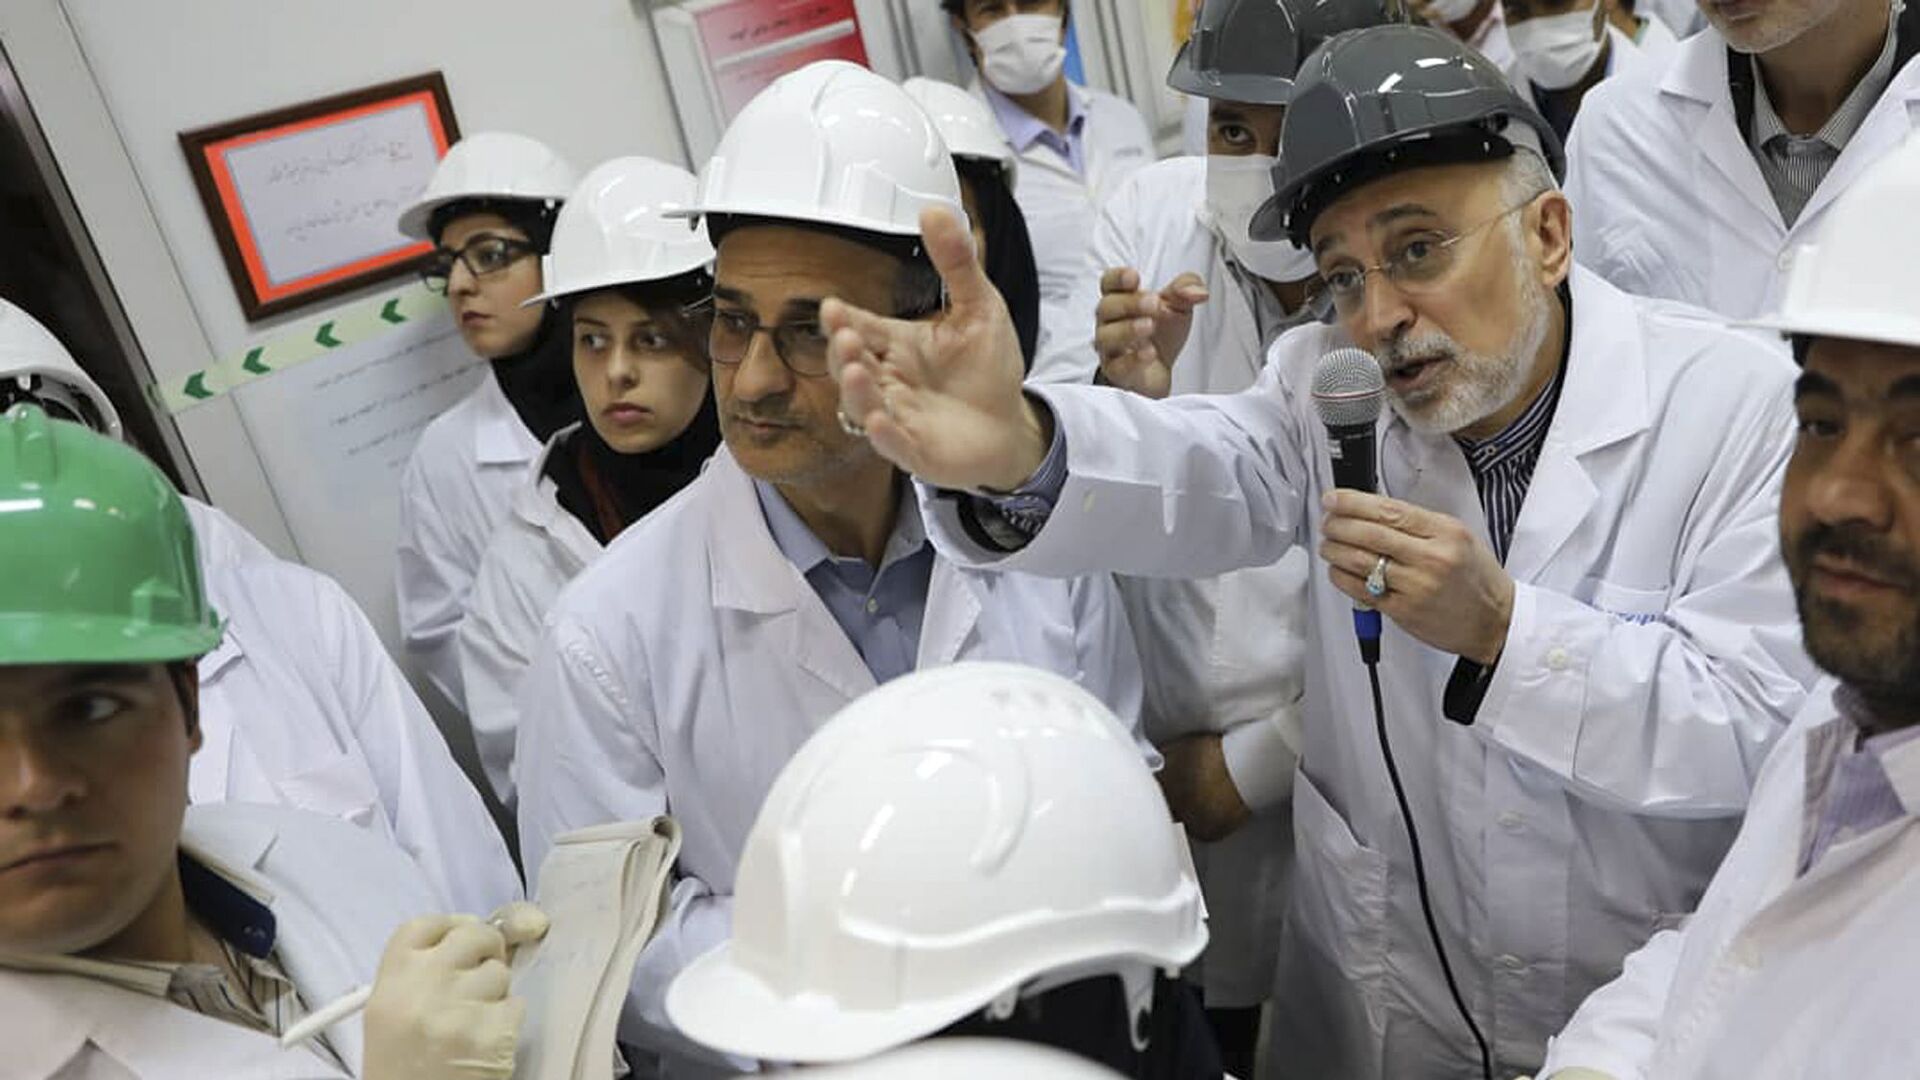 علي أكبر صالحي رئيس منظمة الطاقة النووية الإيرانية يتحدث مع وسائل الإعلام أثناء زيارته لمرفق تخصيب نطنز وسط إيران - سبوتنيك عربي, 1920, 21.04.2021